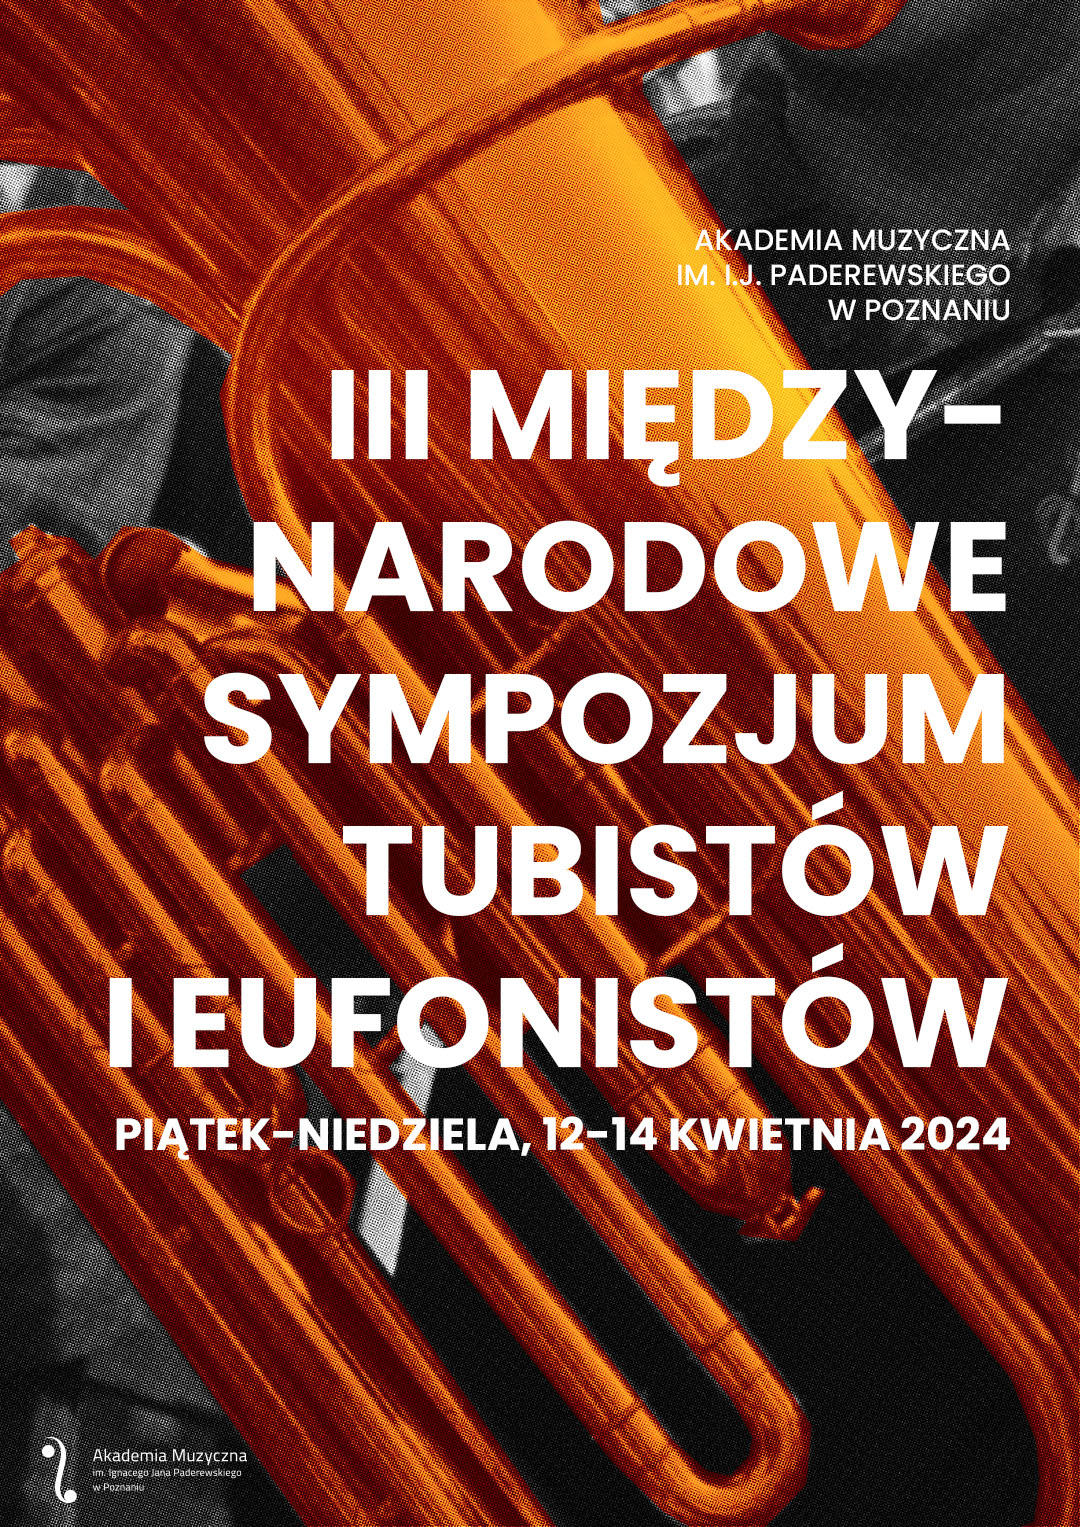 Afisz zawiera informacje na temat Międzynarodowego Sympozjum Tubistów i Eufonistów w kwietniu 2024